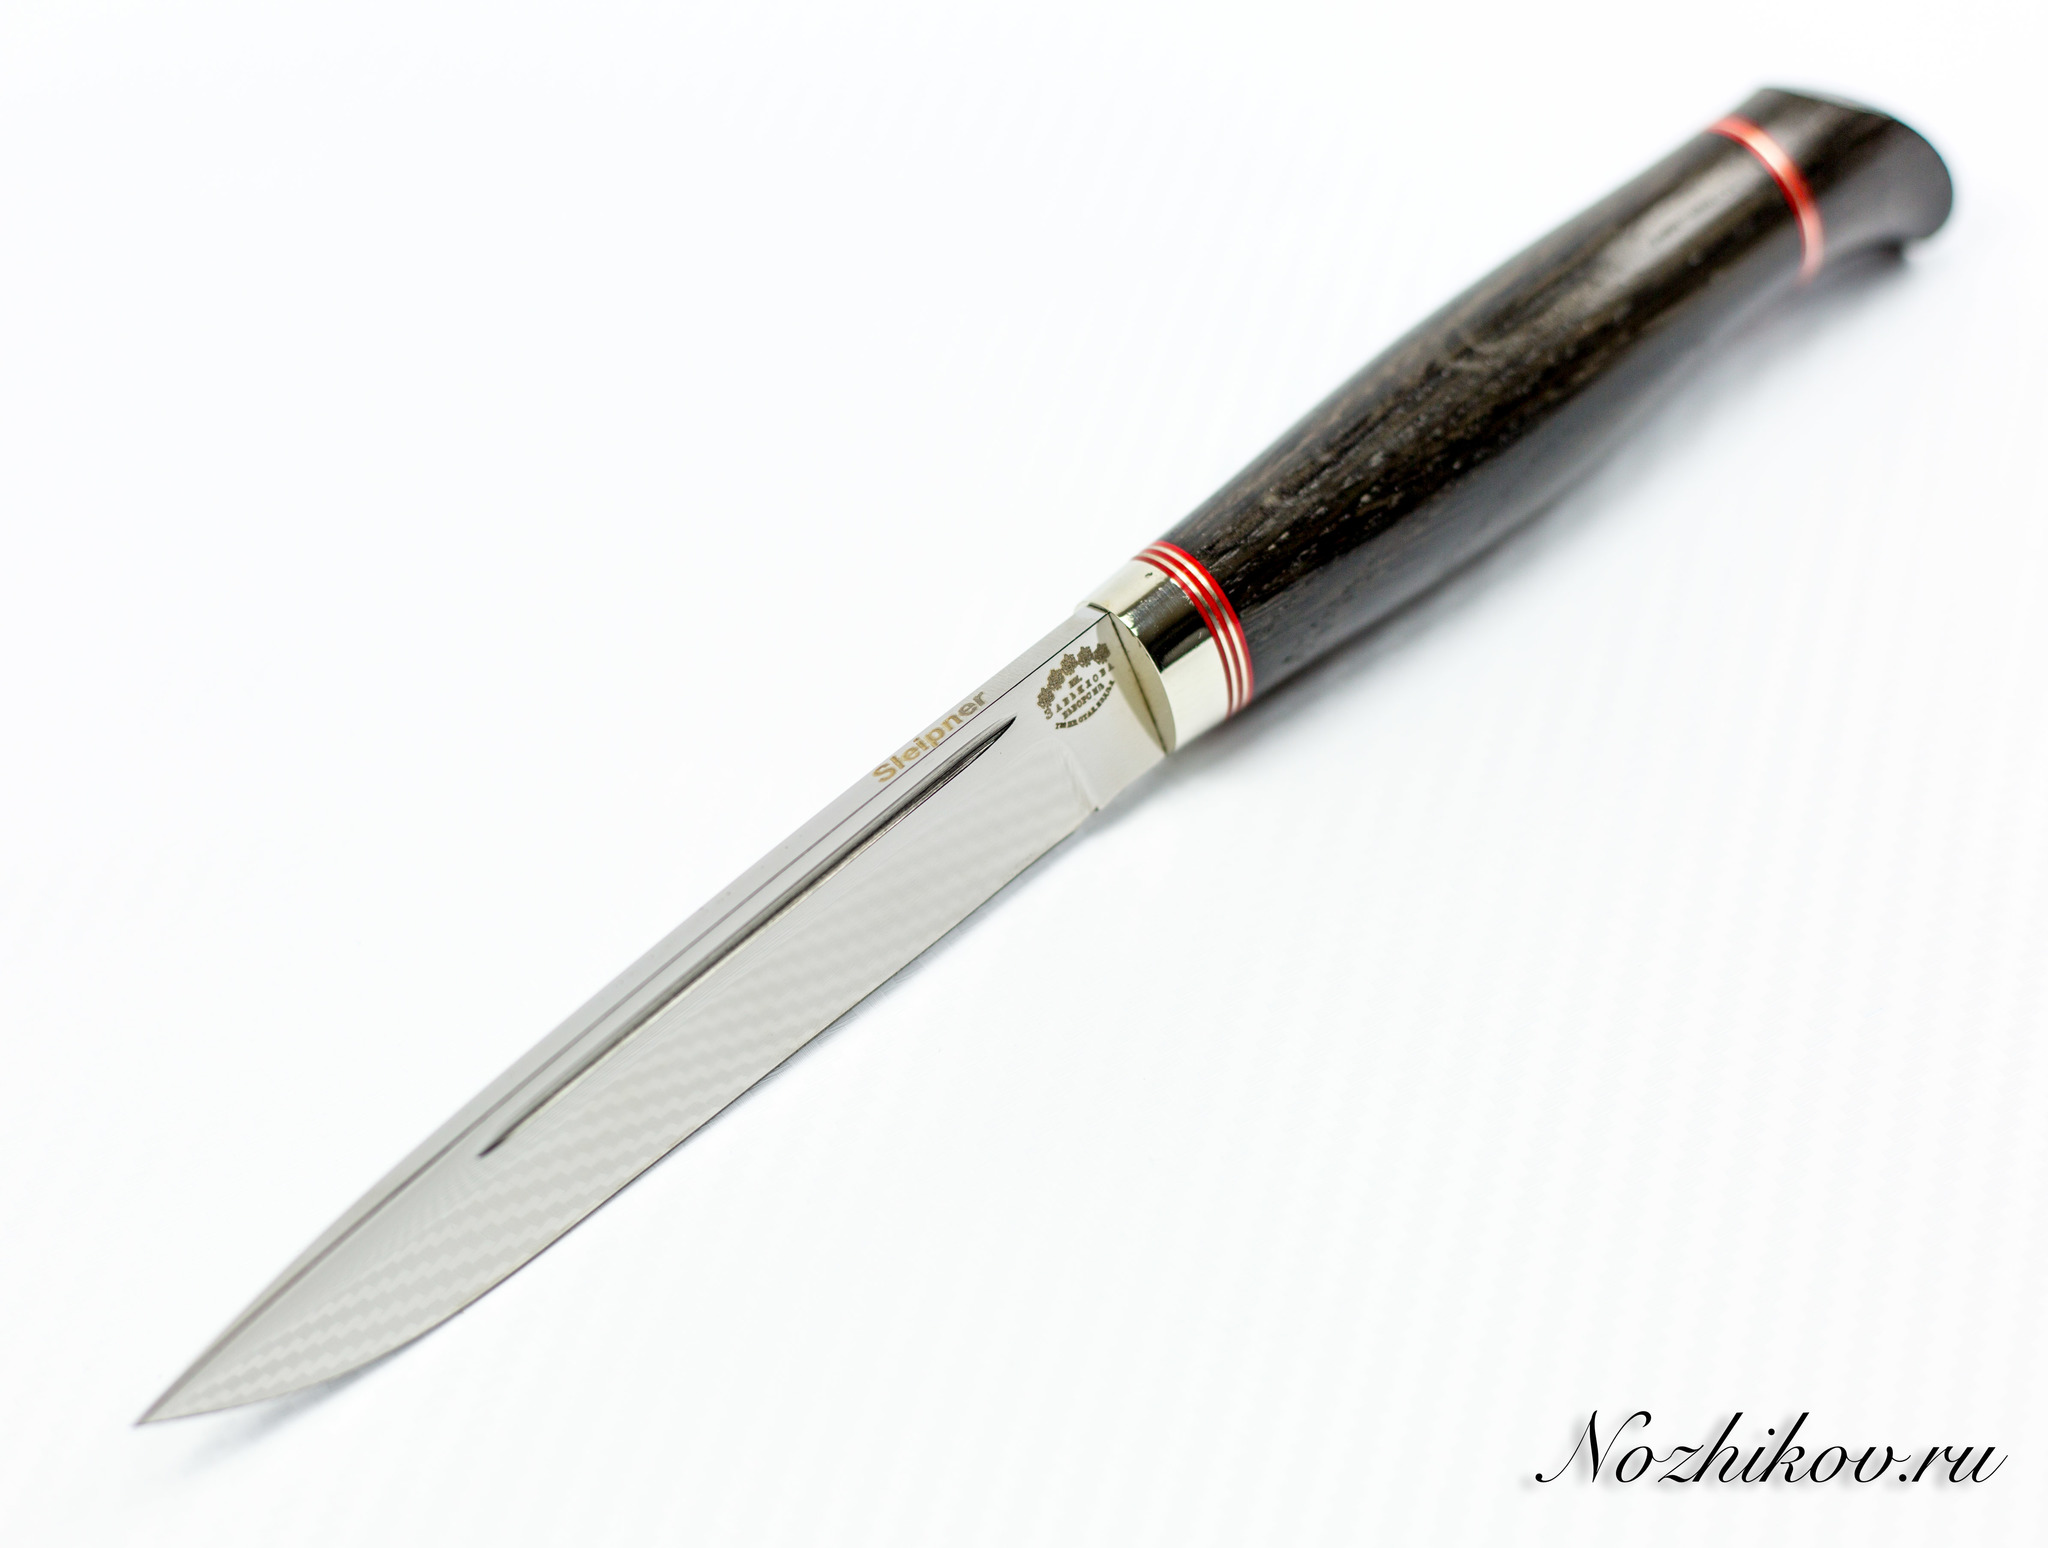 Нож финка из стали Sliepner с красными вставками - фото 4